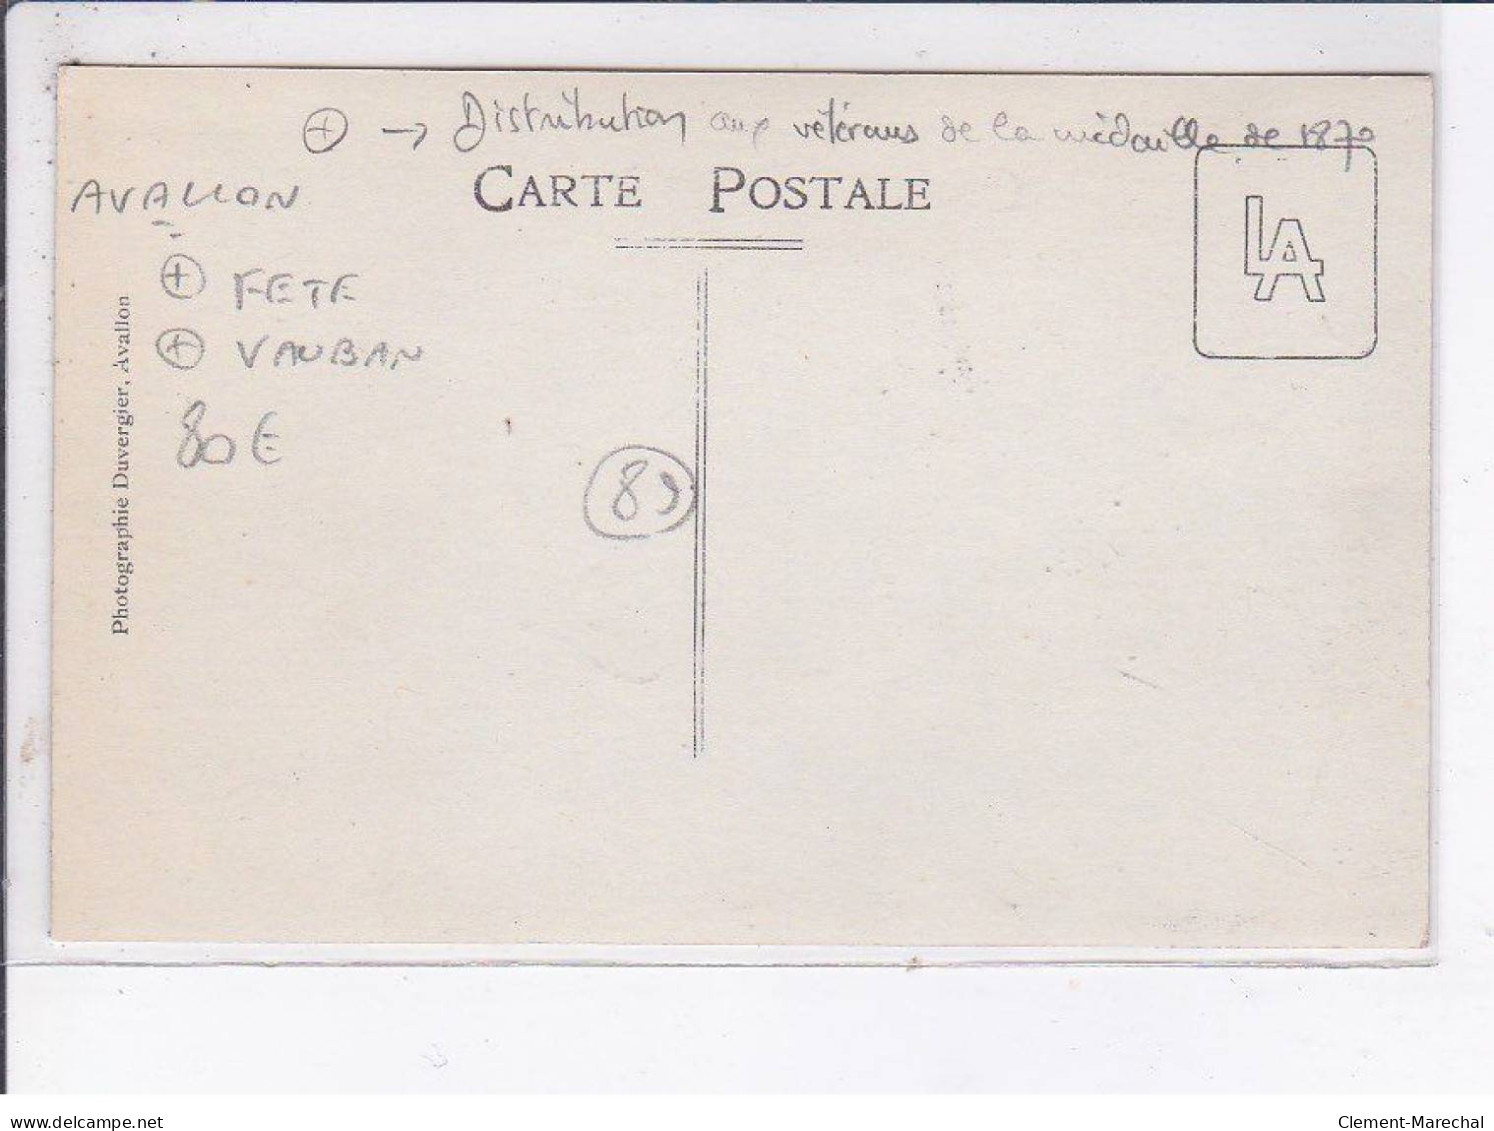 AVALLON: Fête Vauban, Distribution Aux Vétérans De La Médaille De 1870 - Très Bon état - Avallon